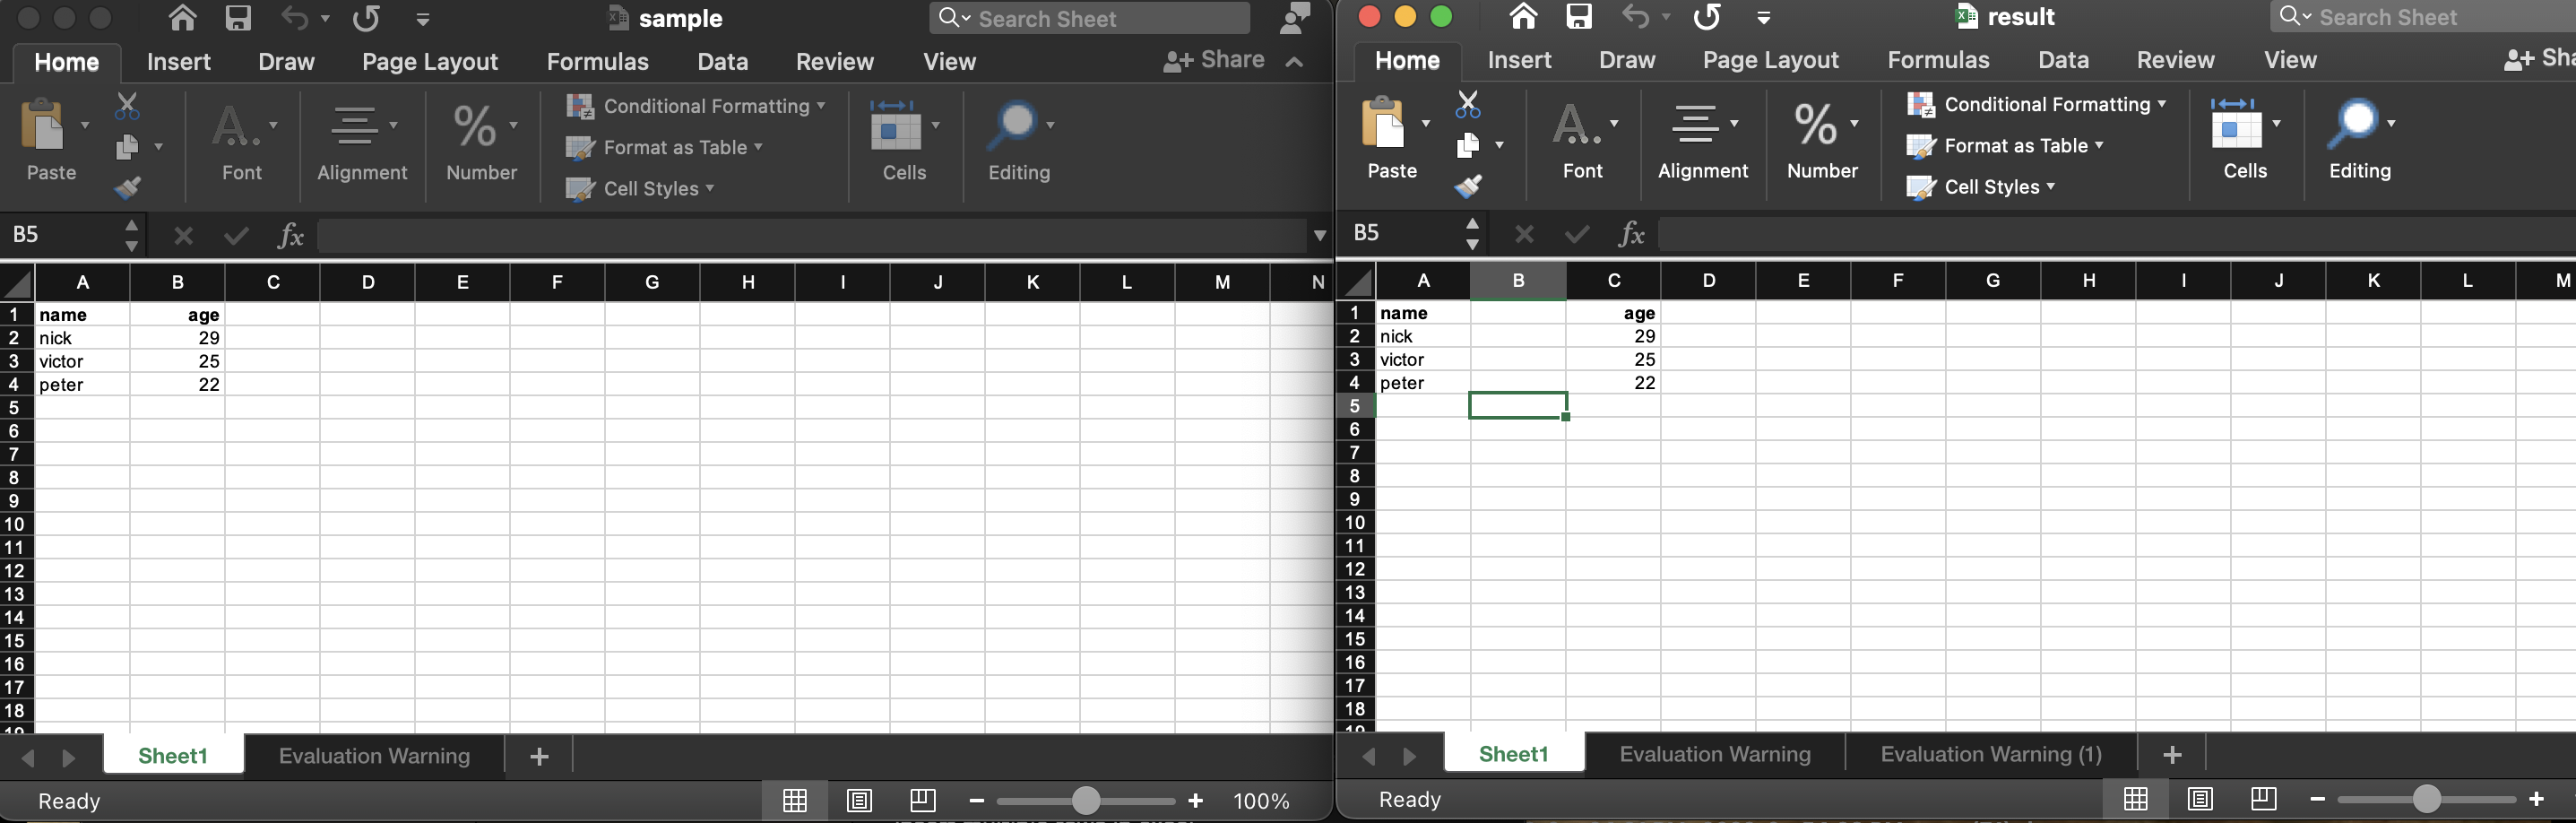 إدراج أعمدة في ملف Excel برمجيًا